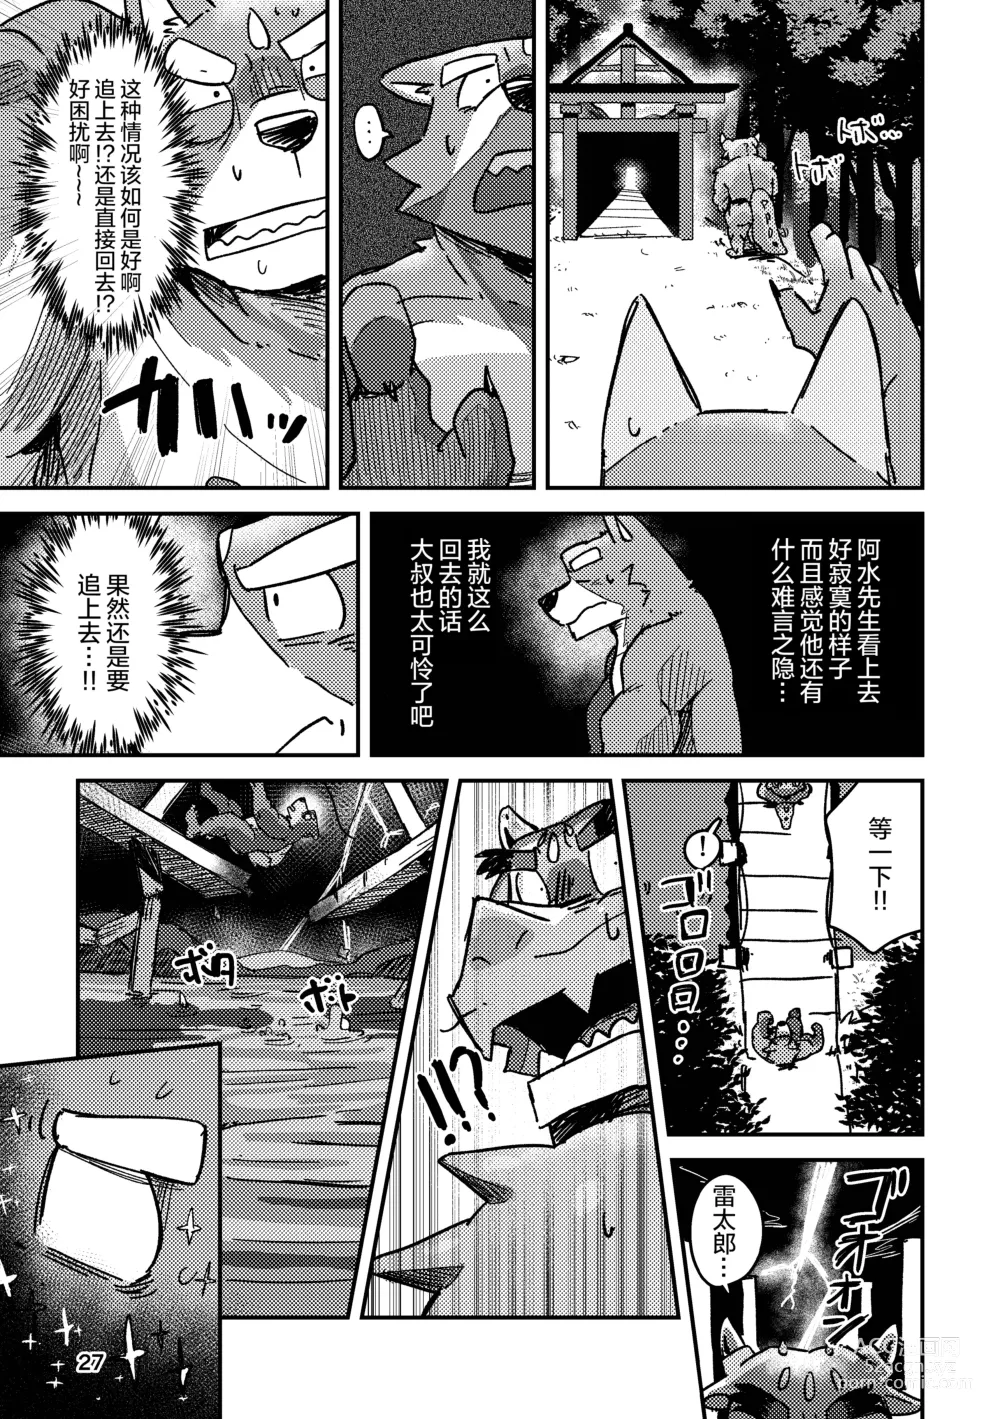 Page 27 of doujinshi 约定的龙穴